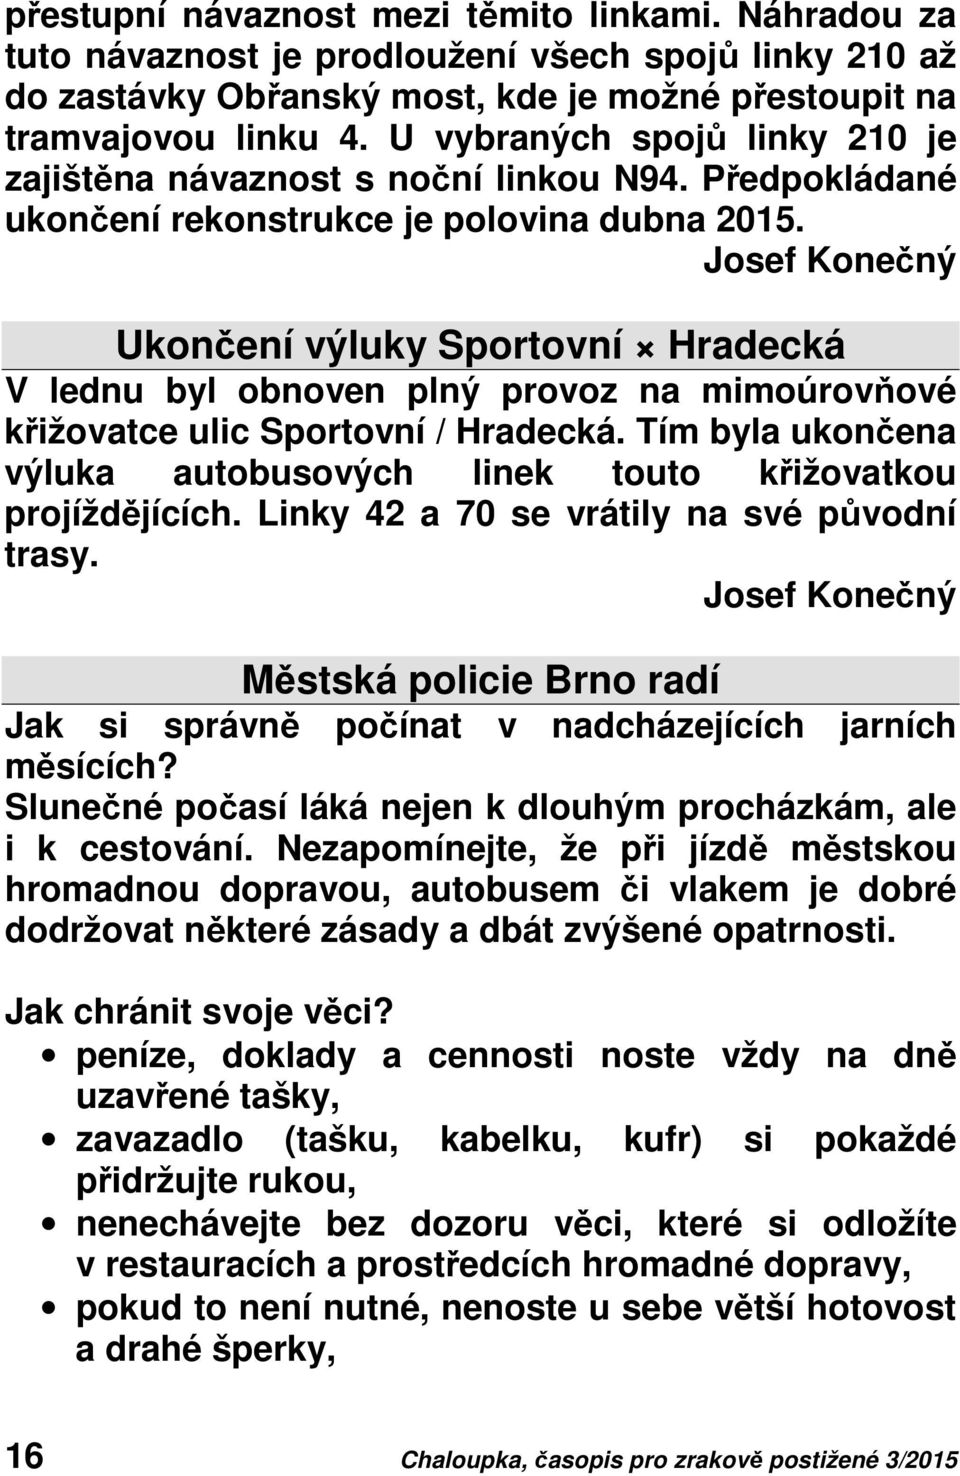 Josef Konečný Ukončení výluky Sportovní Hradecká V lednu byl obnoven plný provoz na mimoúrovňové křižovatce ulic Sportovní / Hradecká.